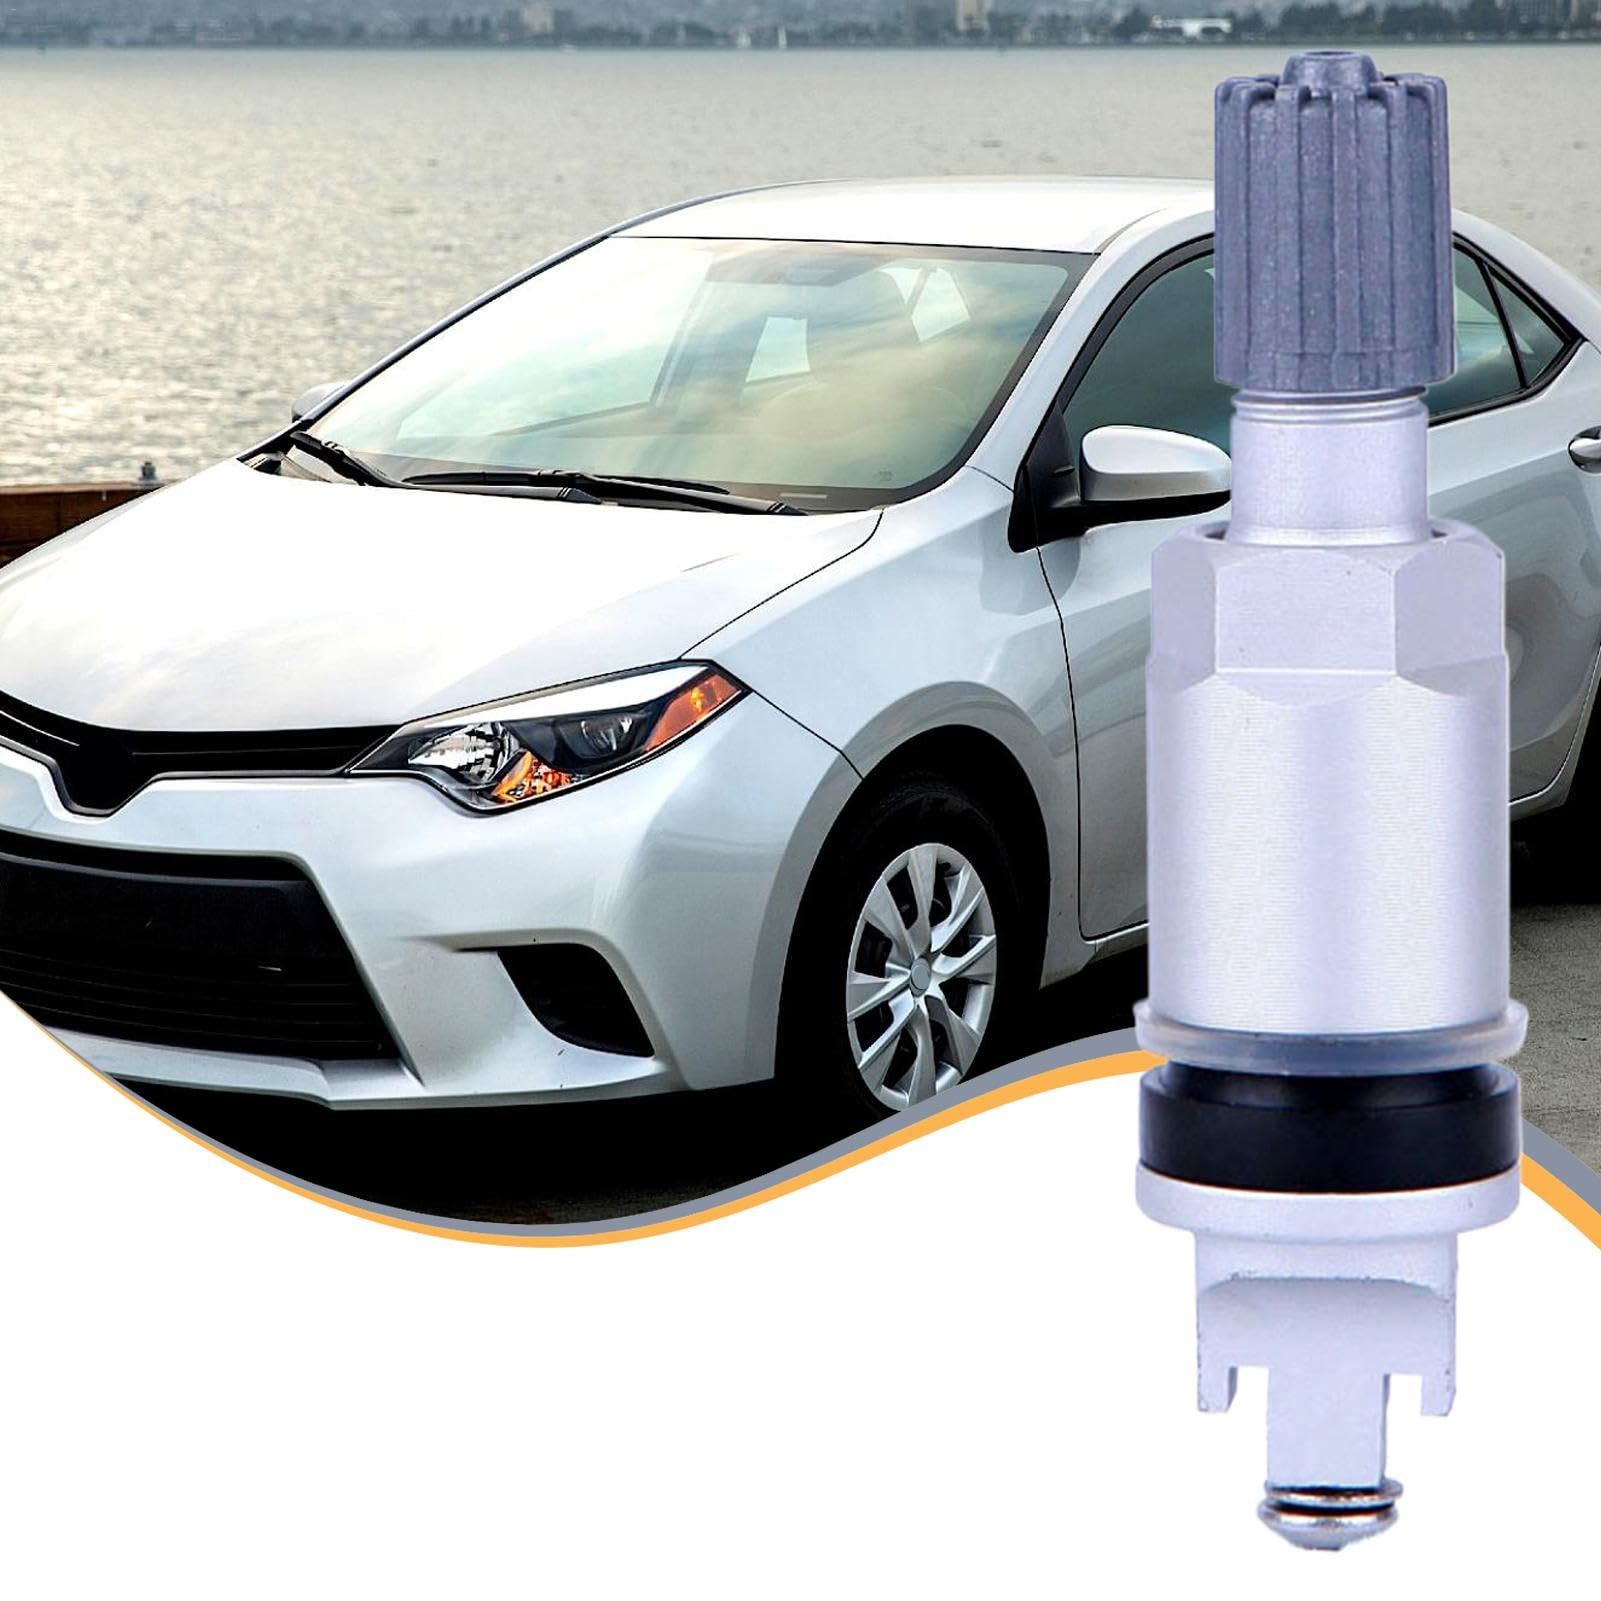 Nuytghr Ersatz-Reifendrucksensoren,Reifendrucksensor - Luftdrucksensor für Reifen - Tpms-Sensoren, genaue Tpms-Sensor-Reifendrucküberwachung ersetzt für Fahrzeuge von Nuytghr